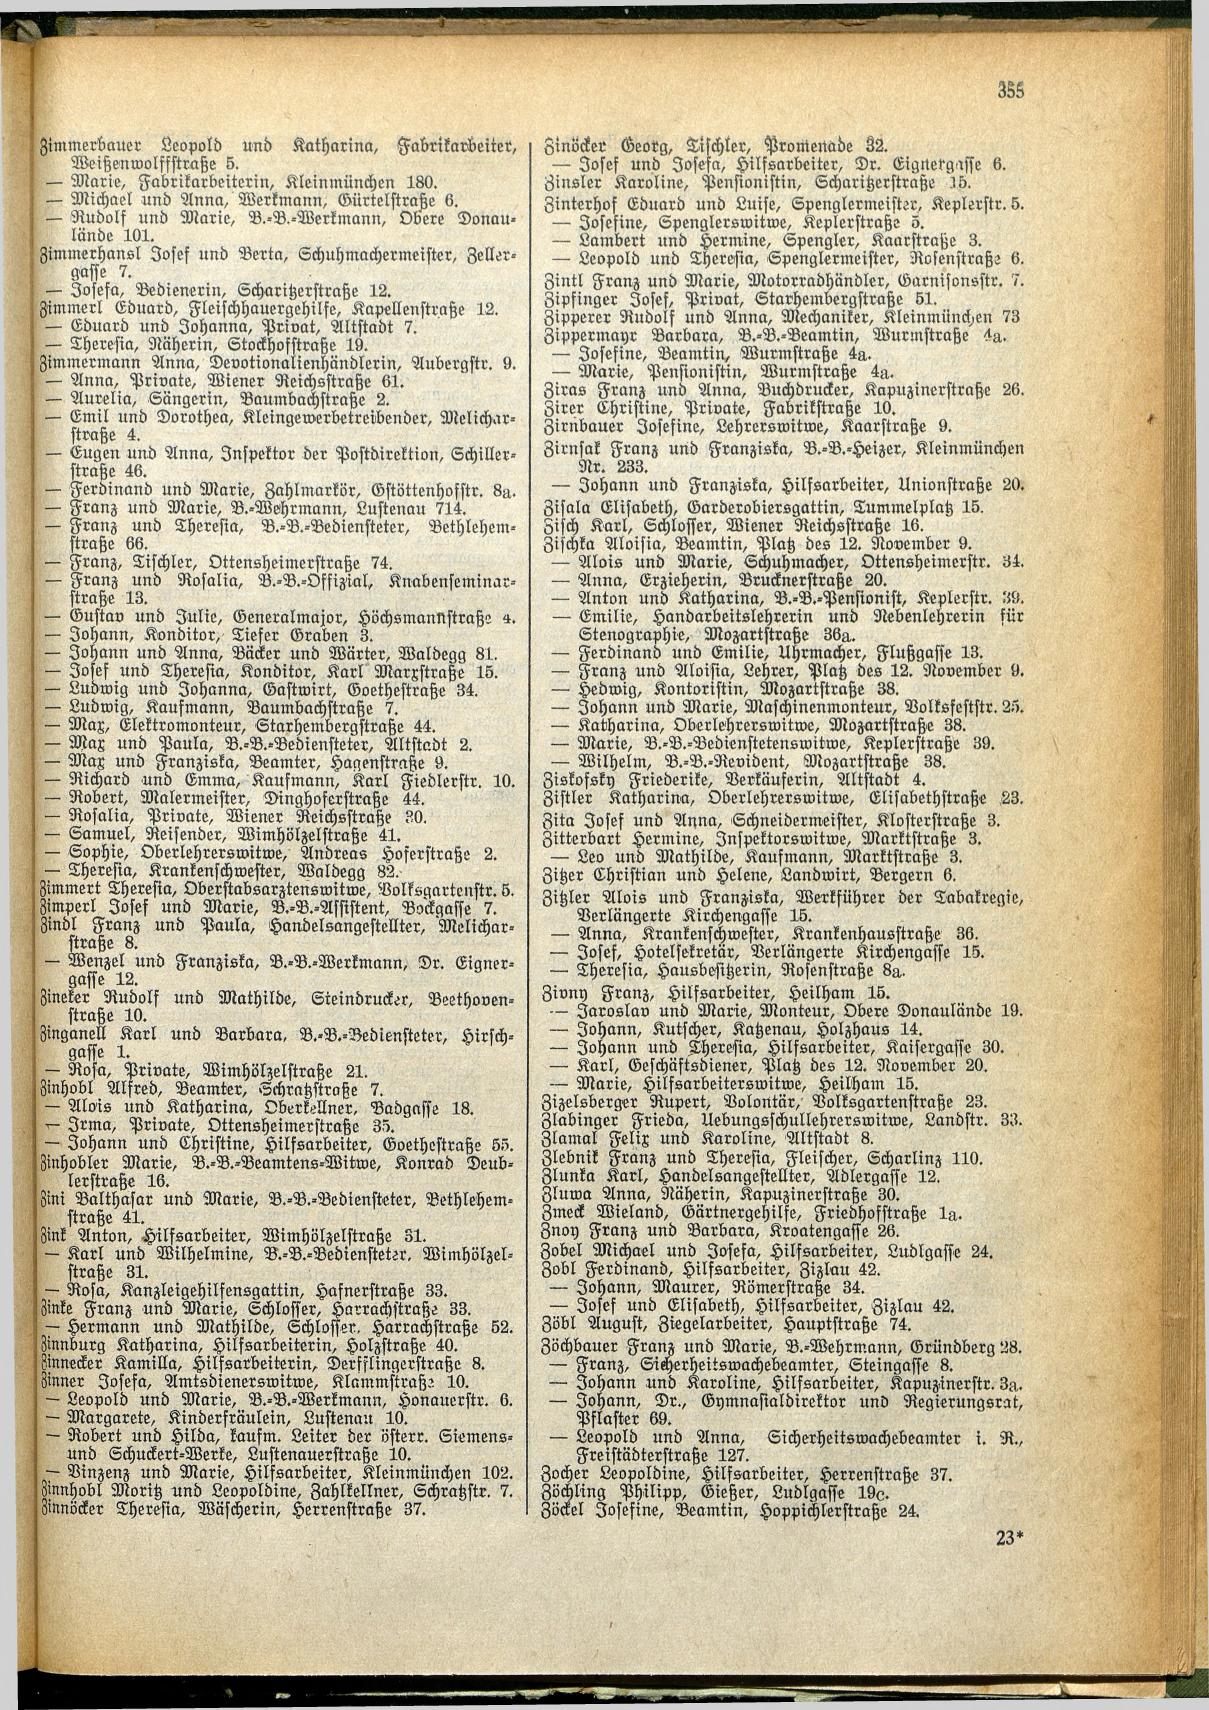 Amtliches Linzer Adreßbuch 1928 - Seite 357